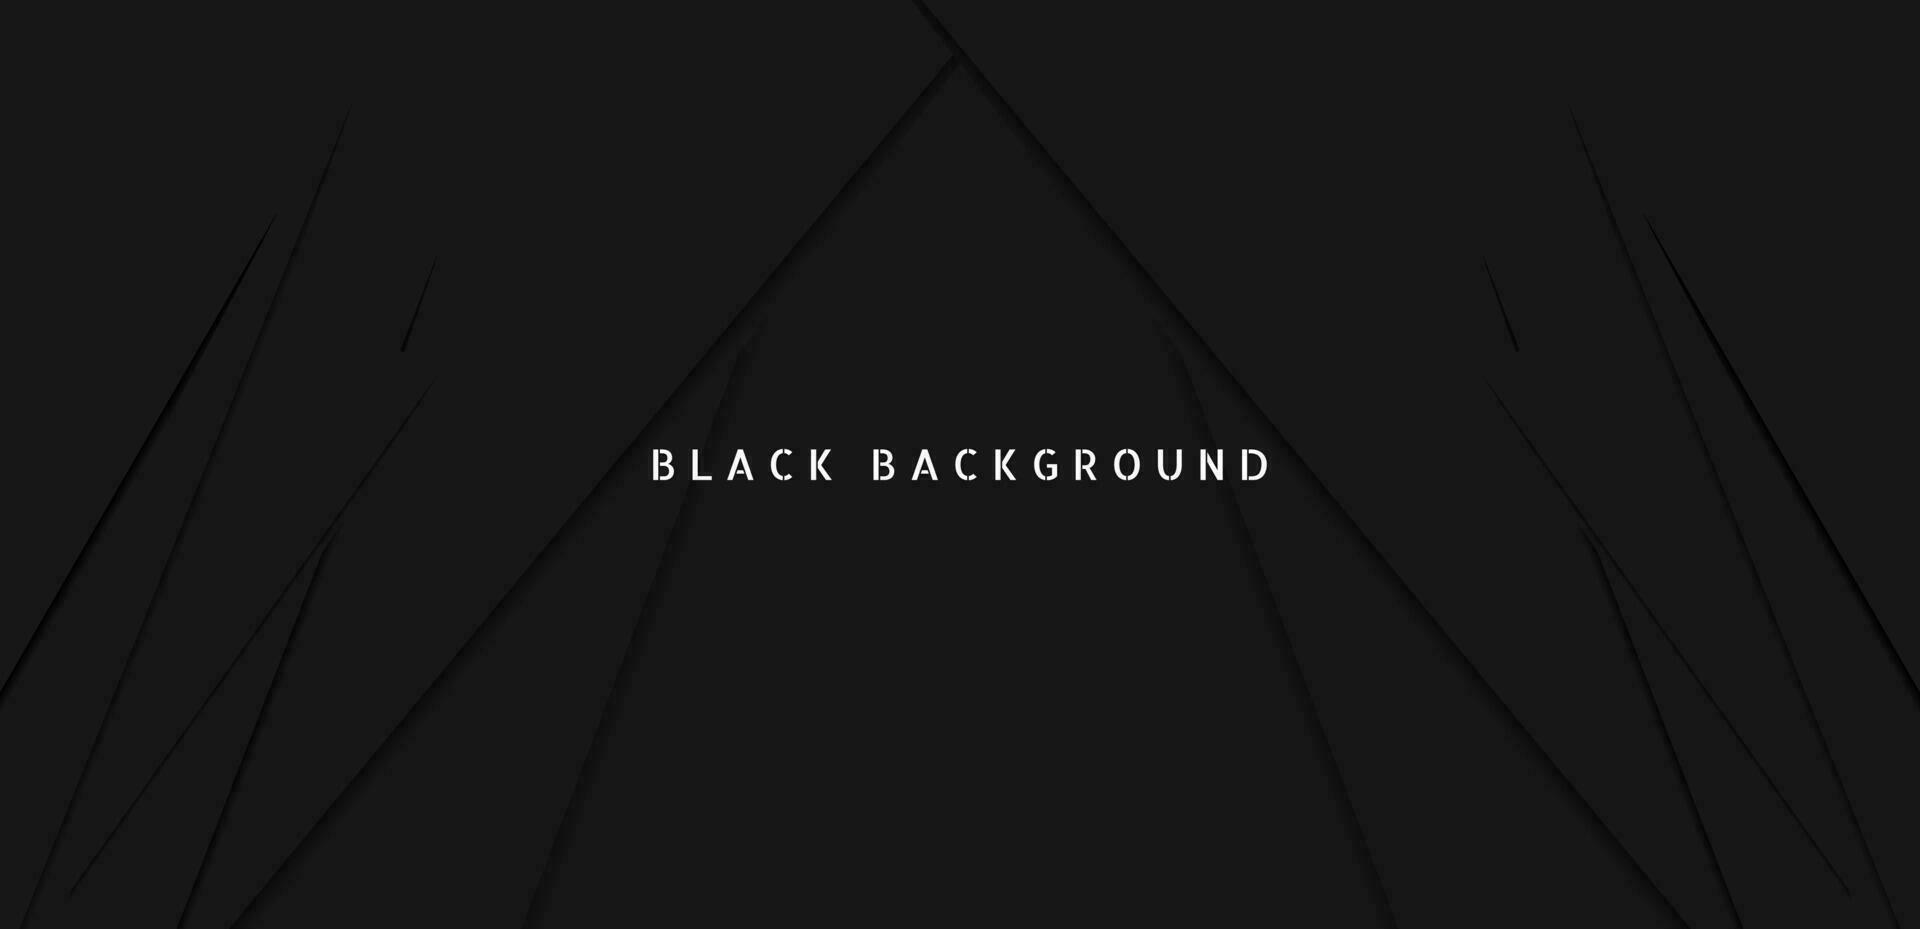 schwarz Prämie abstrakt Hintergrund mit dunkel geometrisch Formen. sehr geeignet zum Poster, Banner, Abdeckung, Werbung, Hintergrund und futuristisch Design Konzept vektor